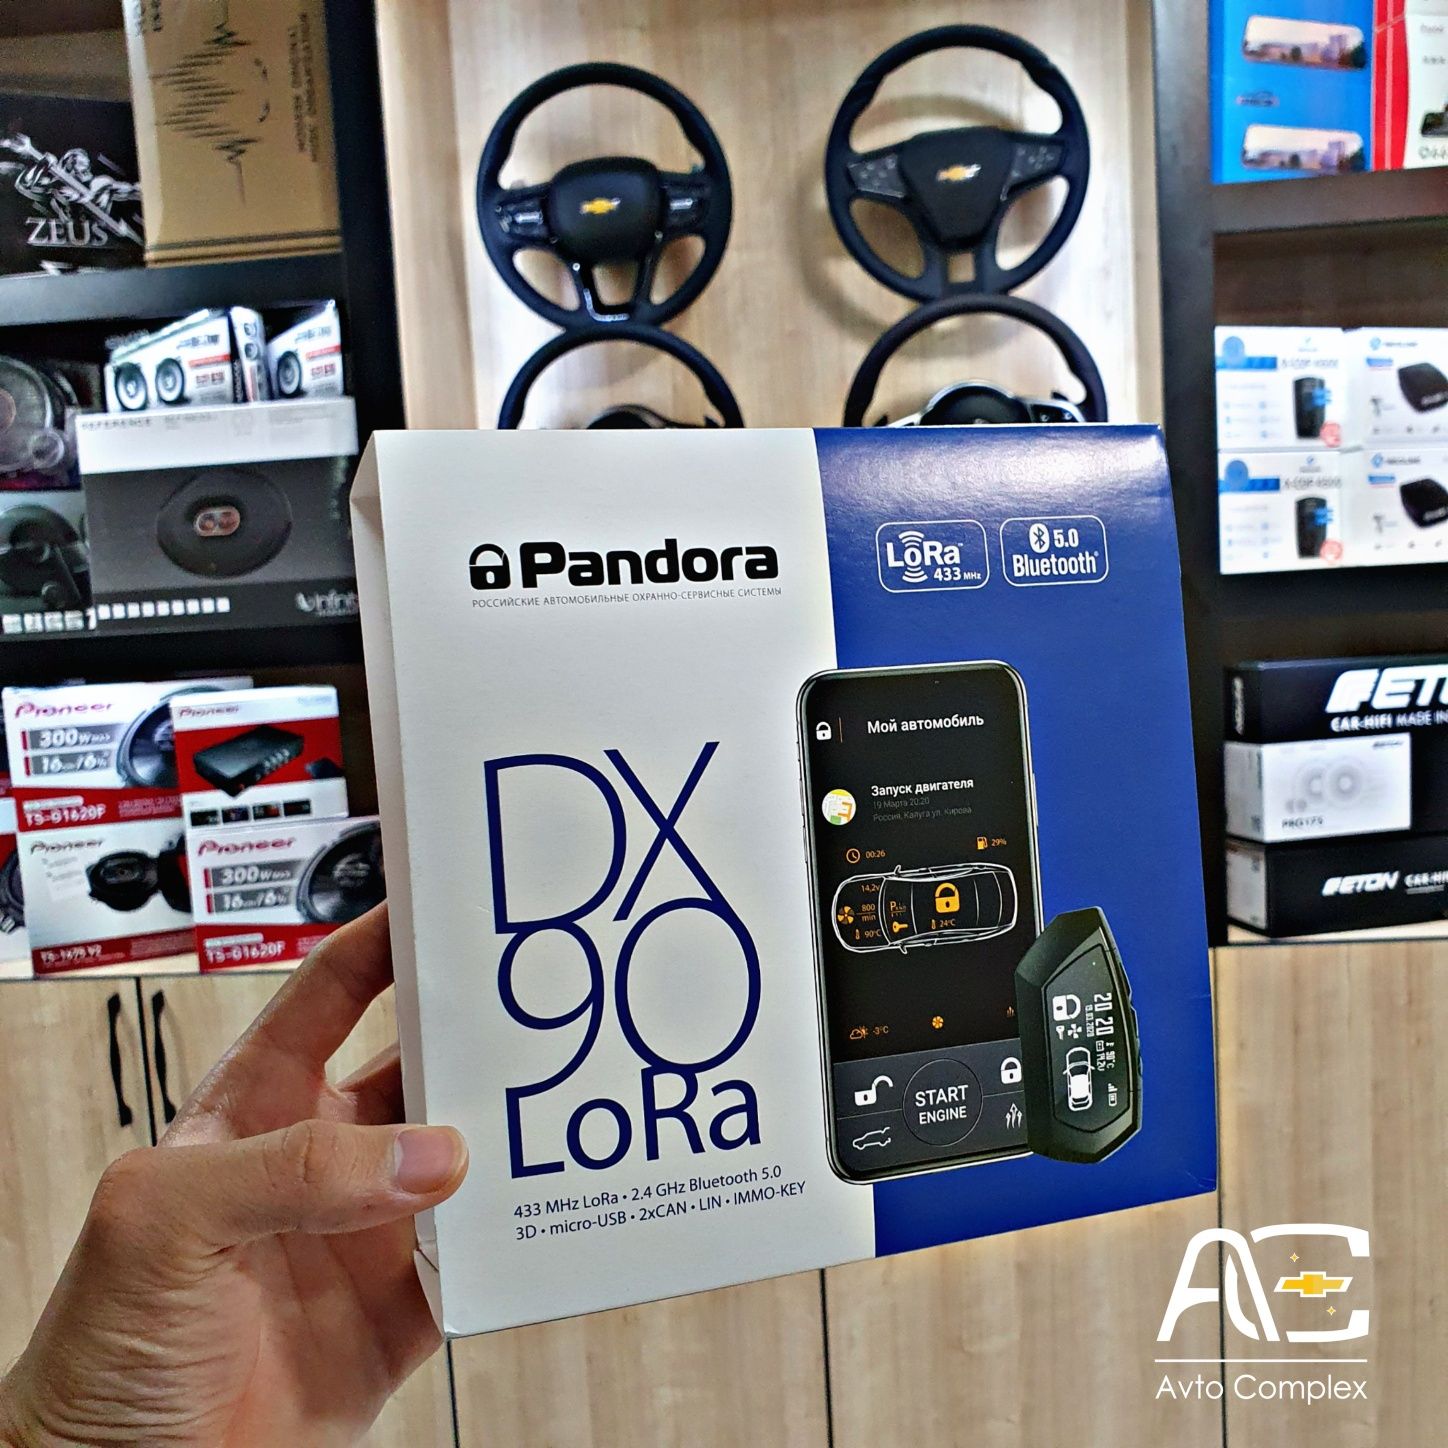 Pandora dx90 lora Автосигнализация с гарантией на 3 года сигнализация.